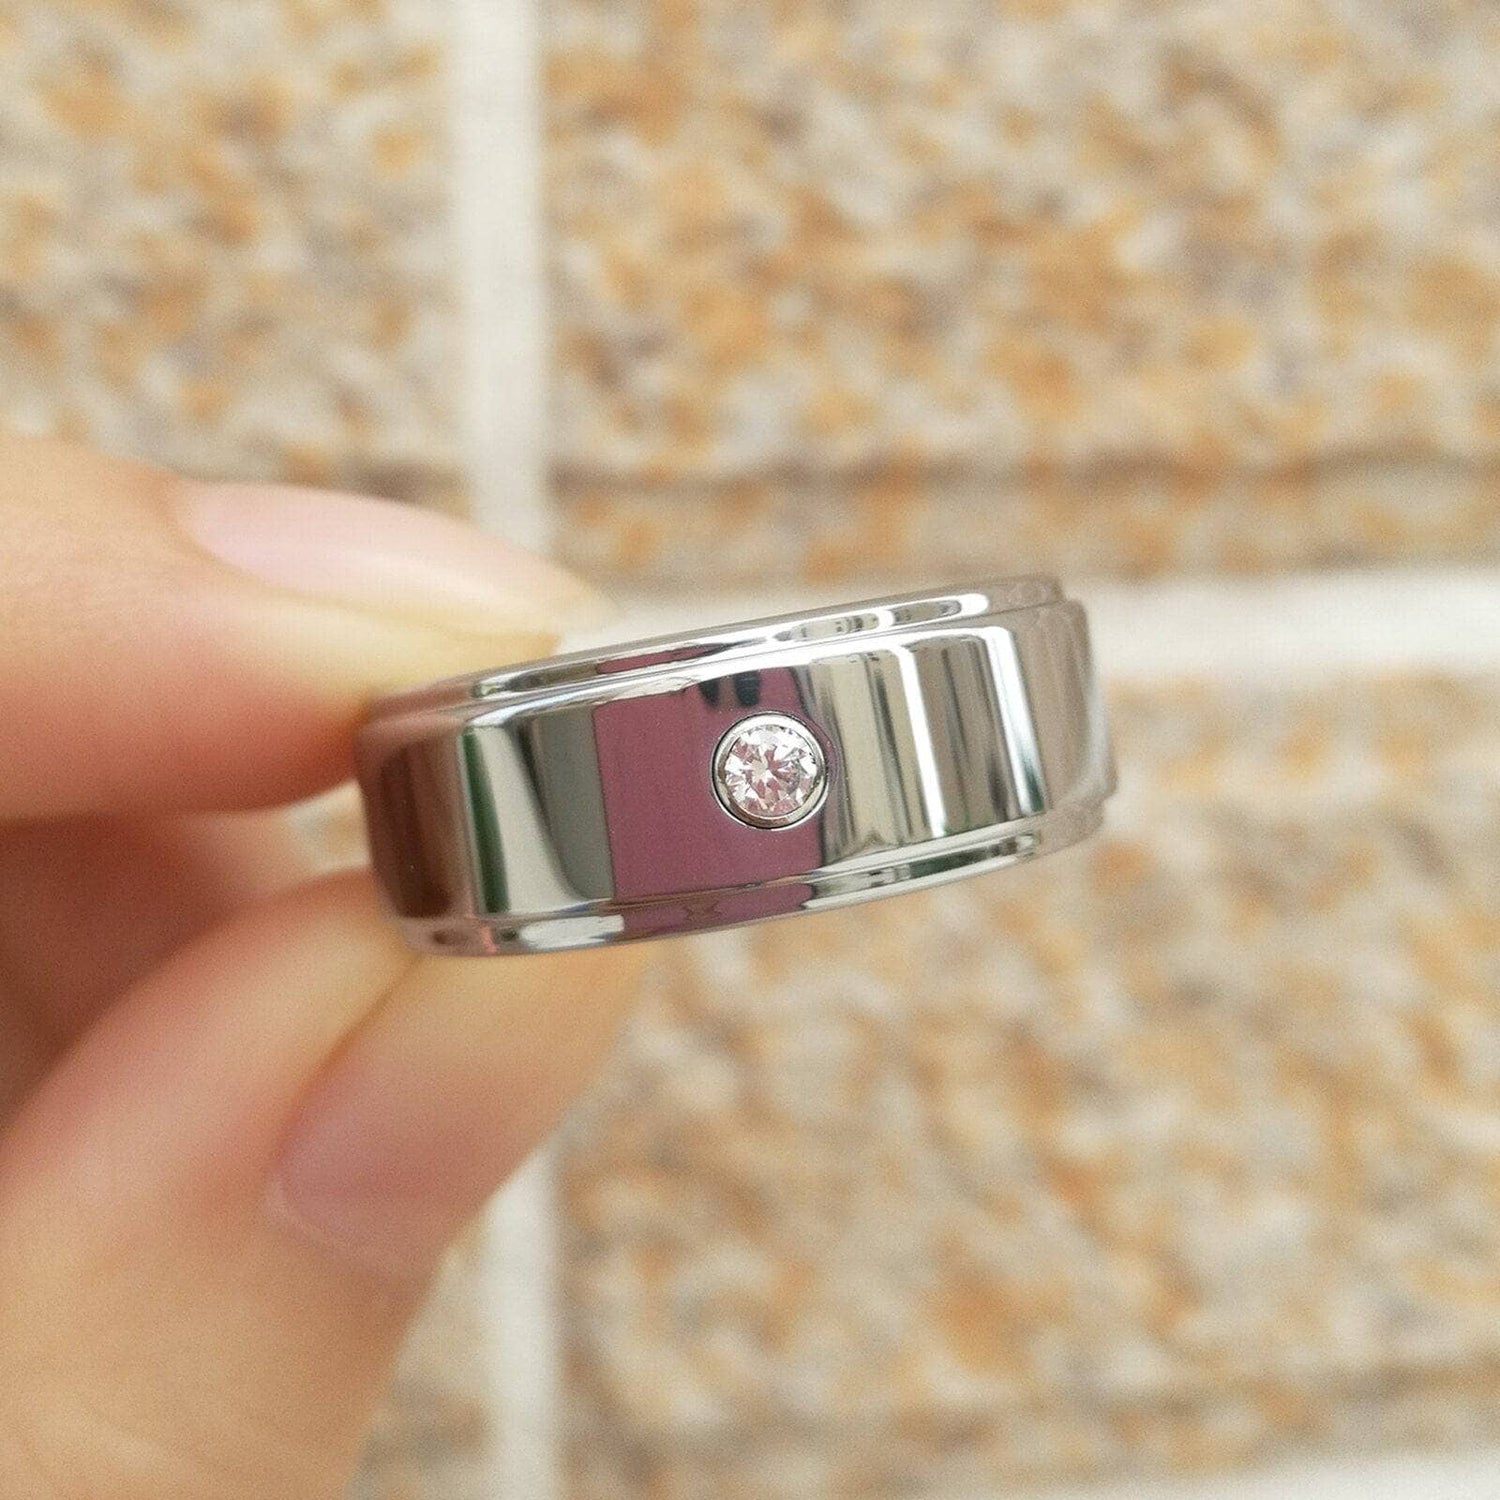 Tungsten Carbide 8mm White Zircon Ring Band